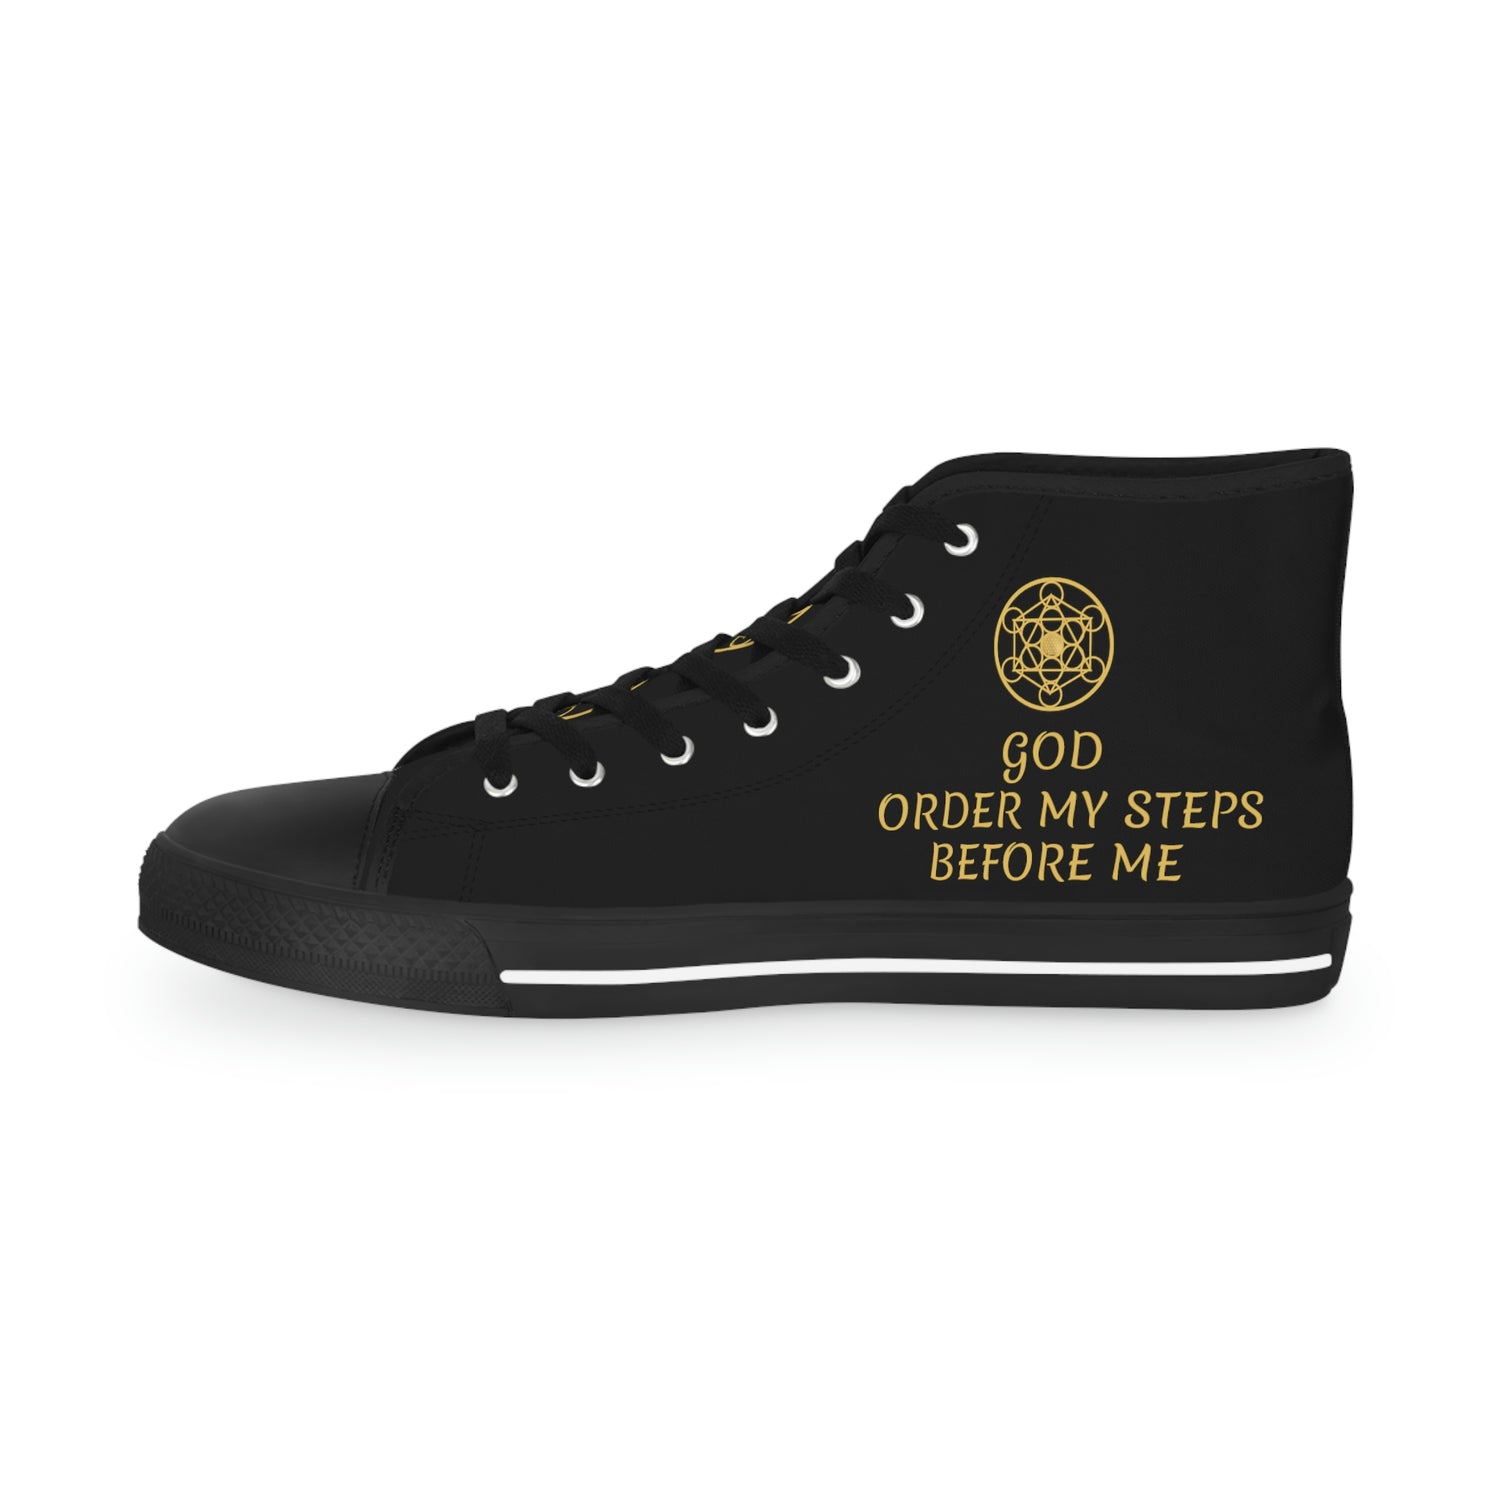 GOD ORDER MY STEPS BEFORE ME - Men's High Top Sneakers - Black